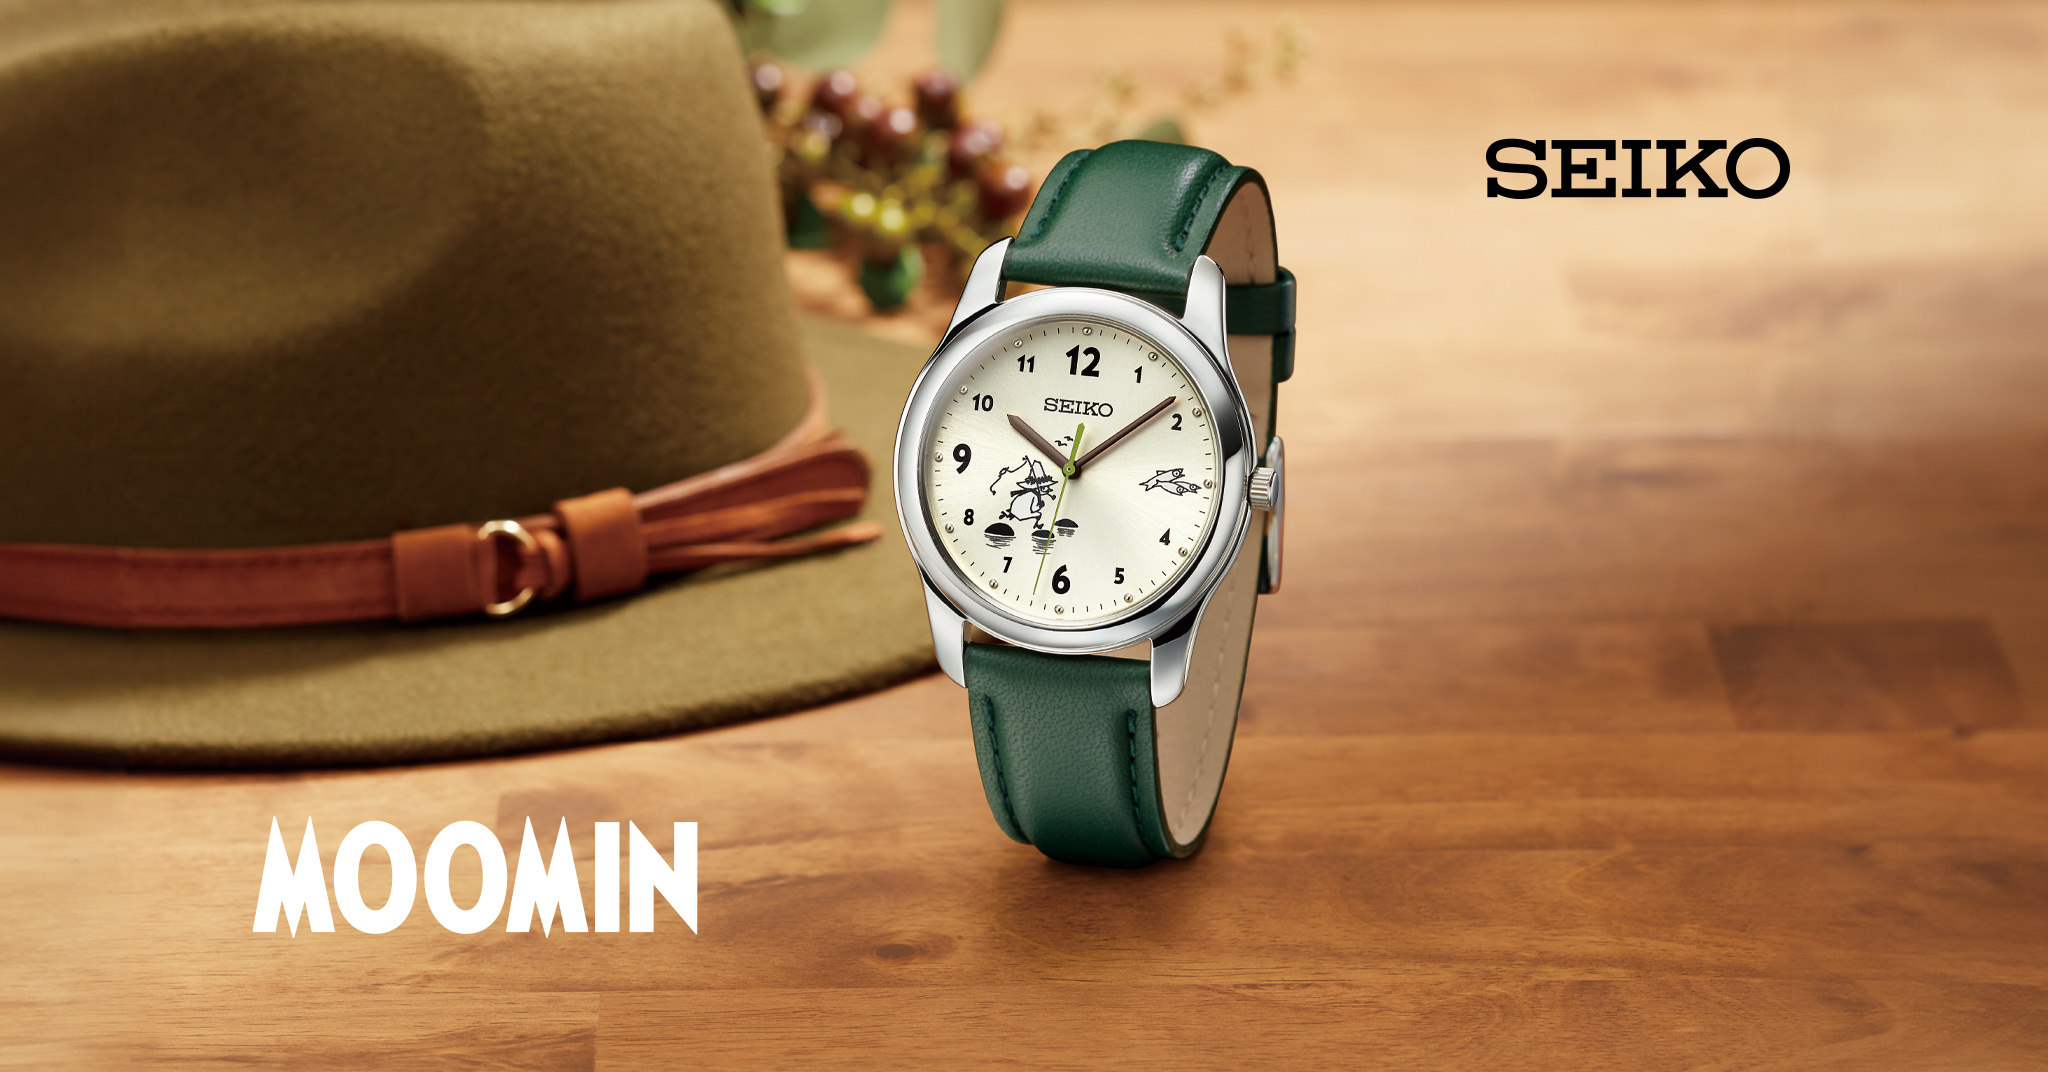 ムーミン✳︎腕時計✳︎ムーミン展限定モデル✳︎トーベ生誕100年ムーミン展で購入